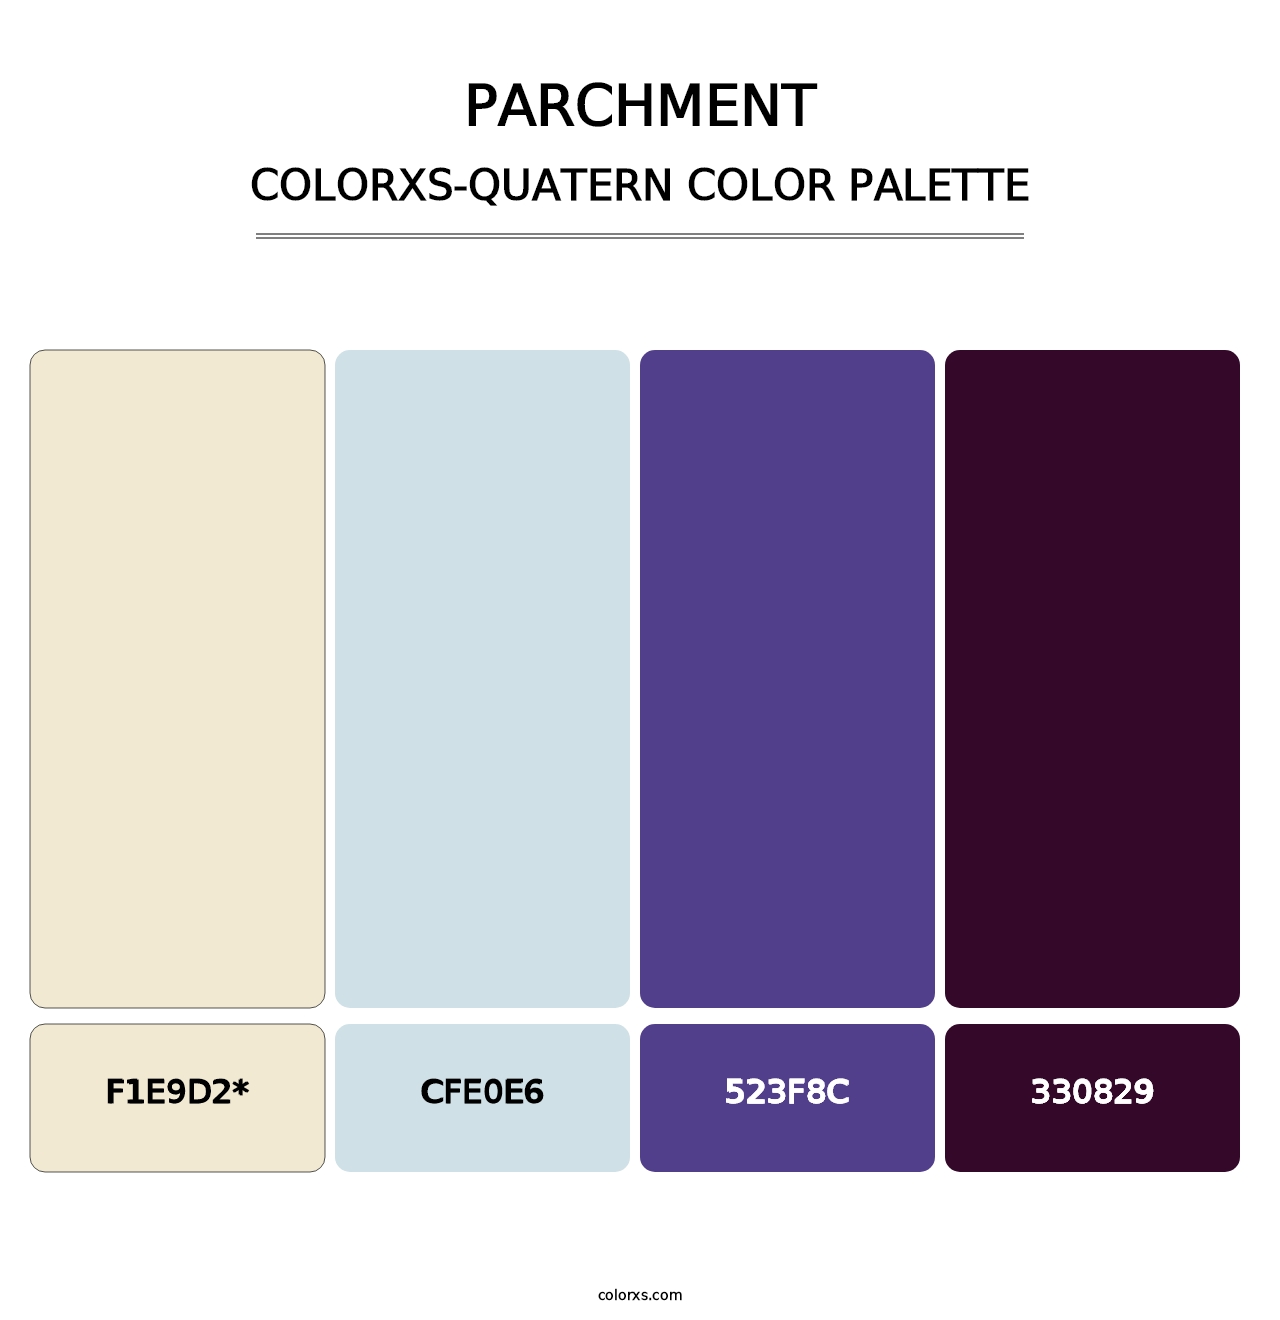 Parchment - Colorxs Quatern Palette